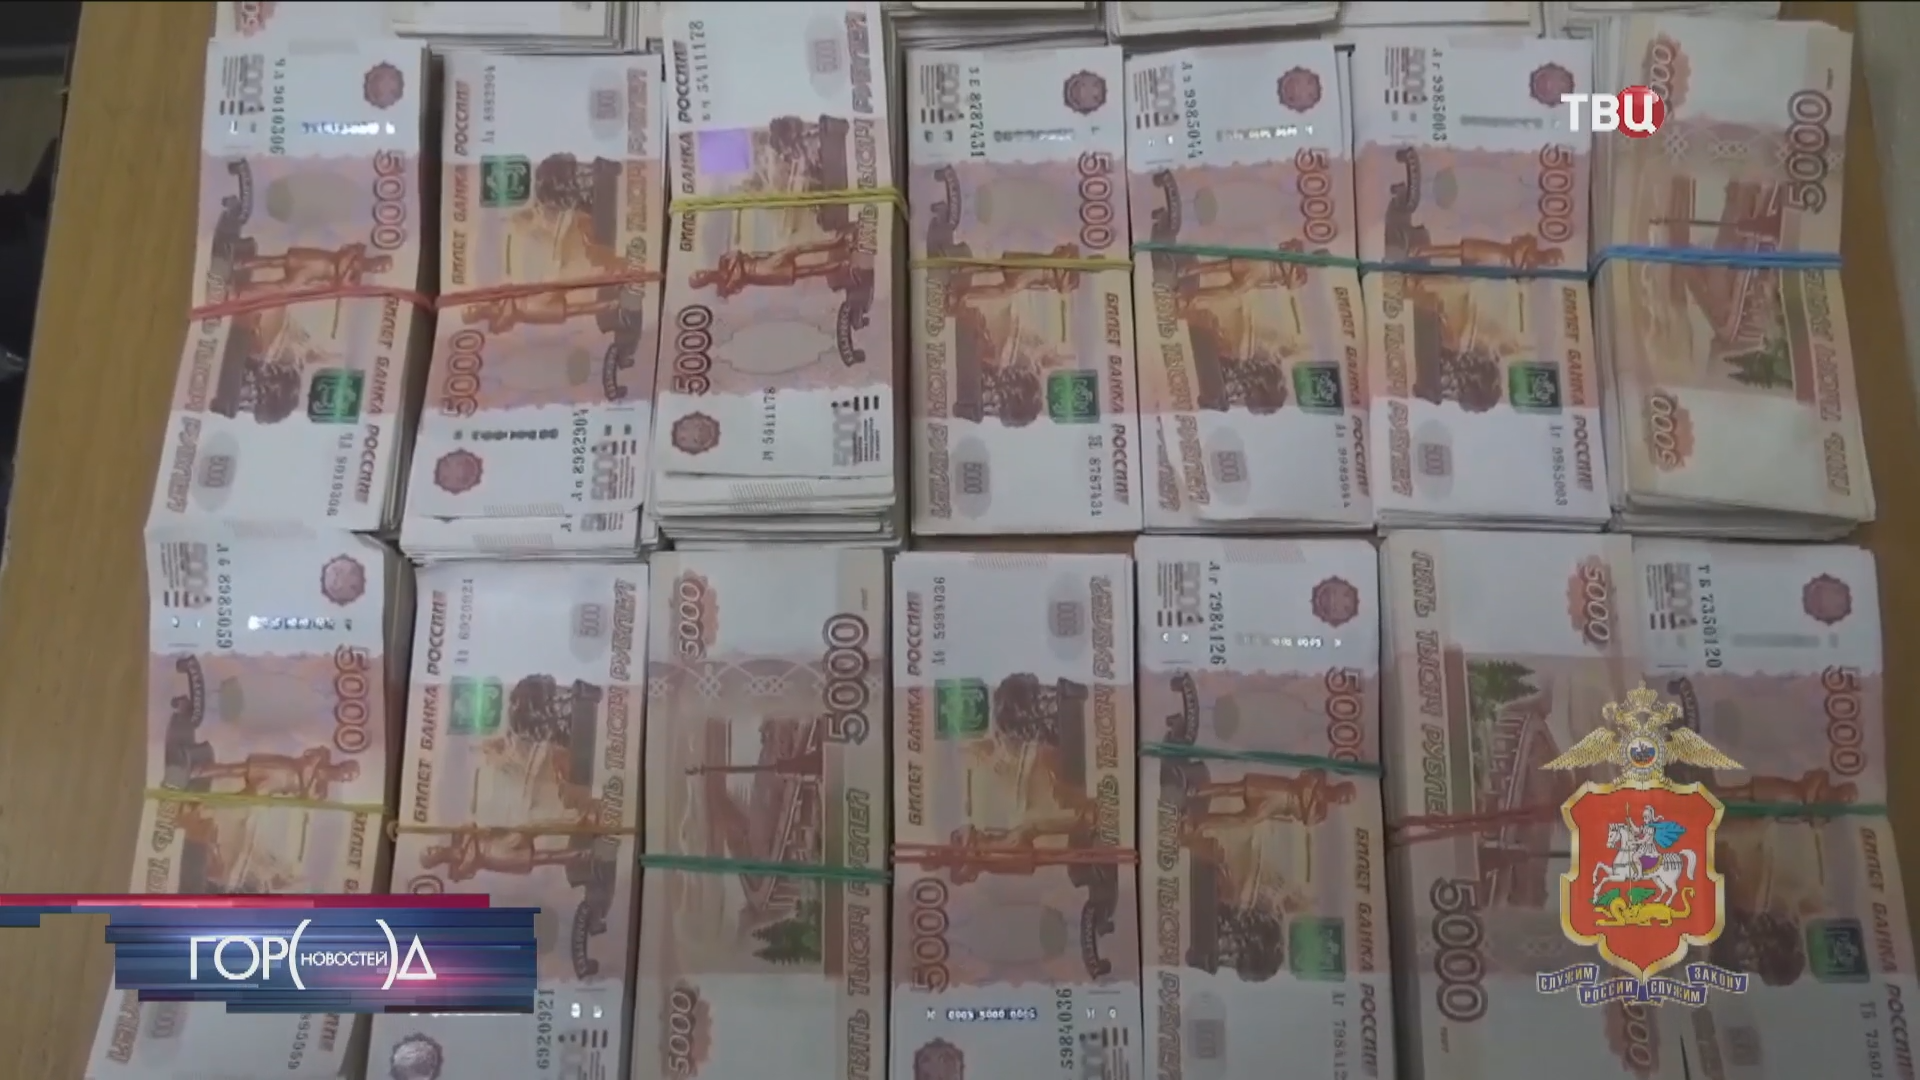 В Химках задержали мужчину за хищение 28 миллионов рублей / Город новостей на ТВЦ